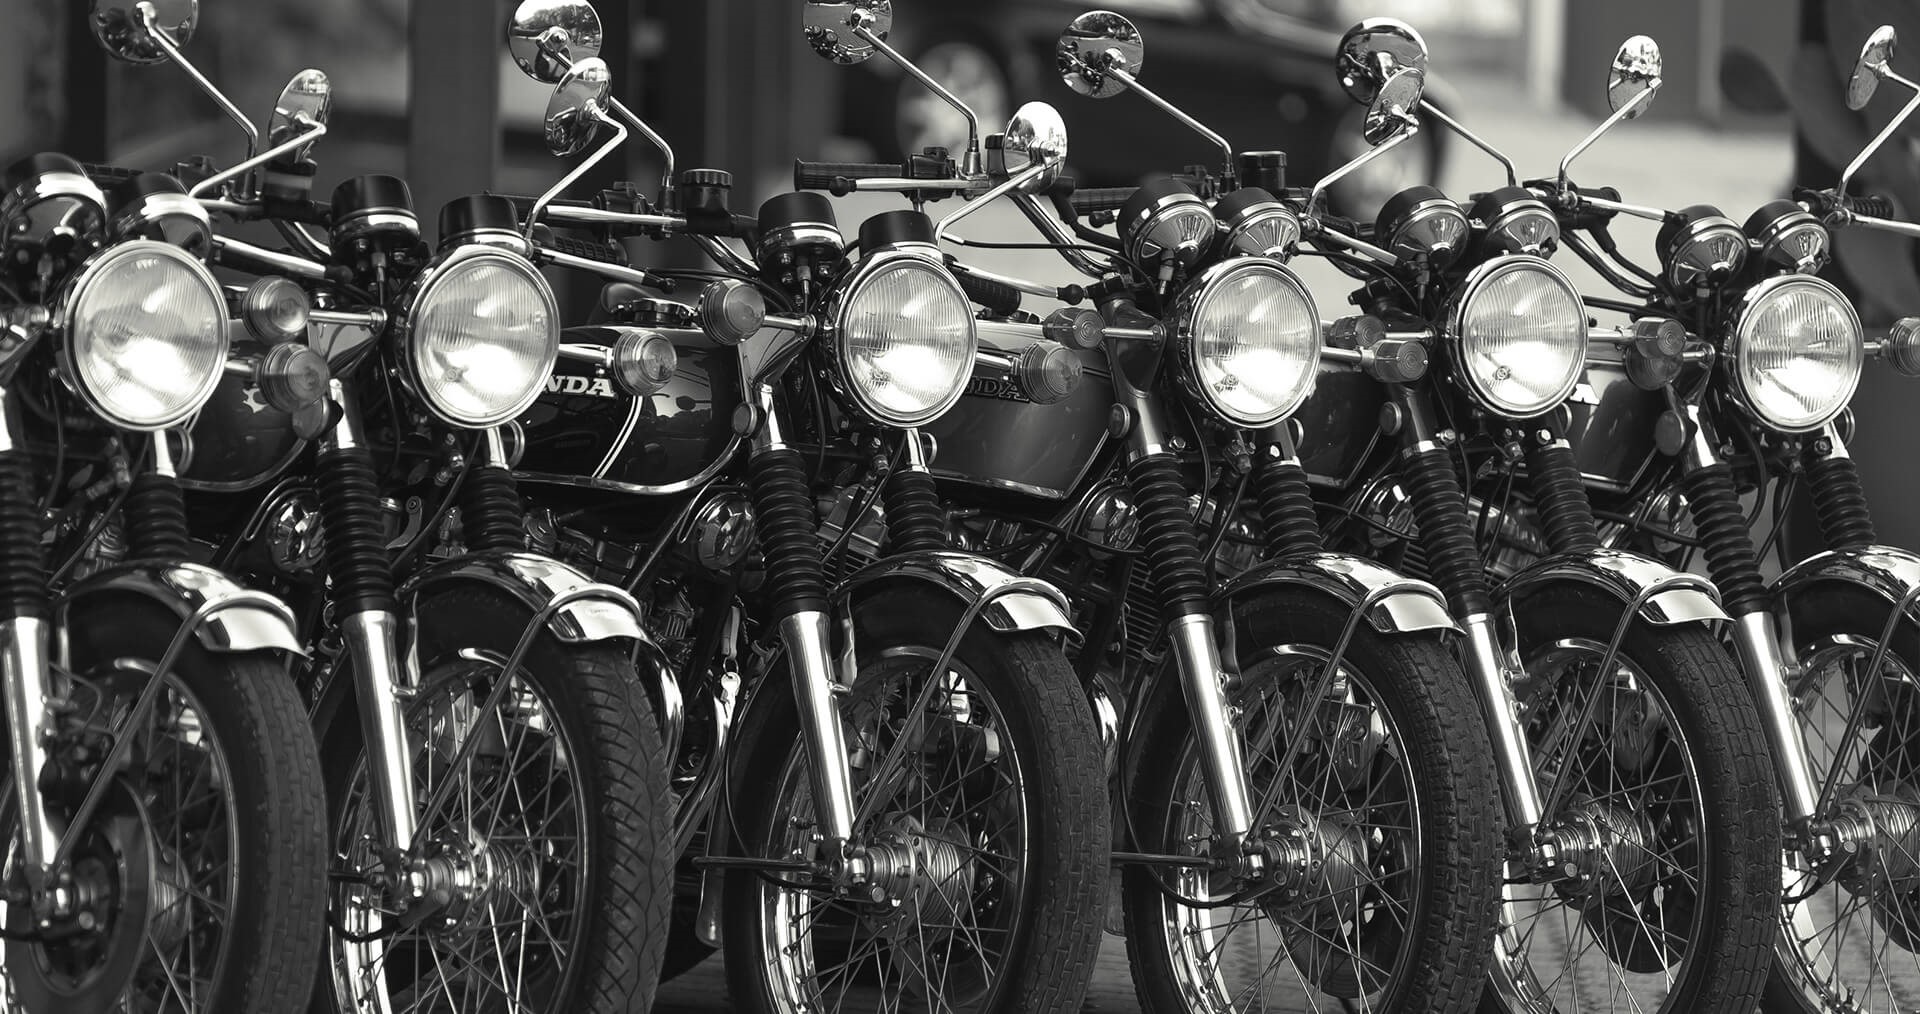 Vintage Honda motorcycles.